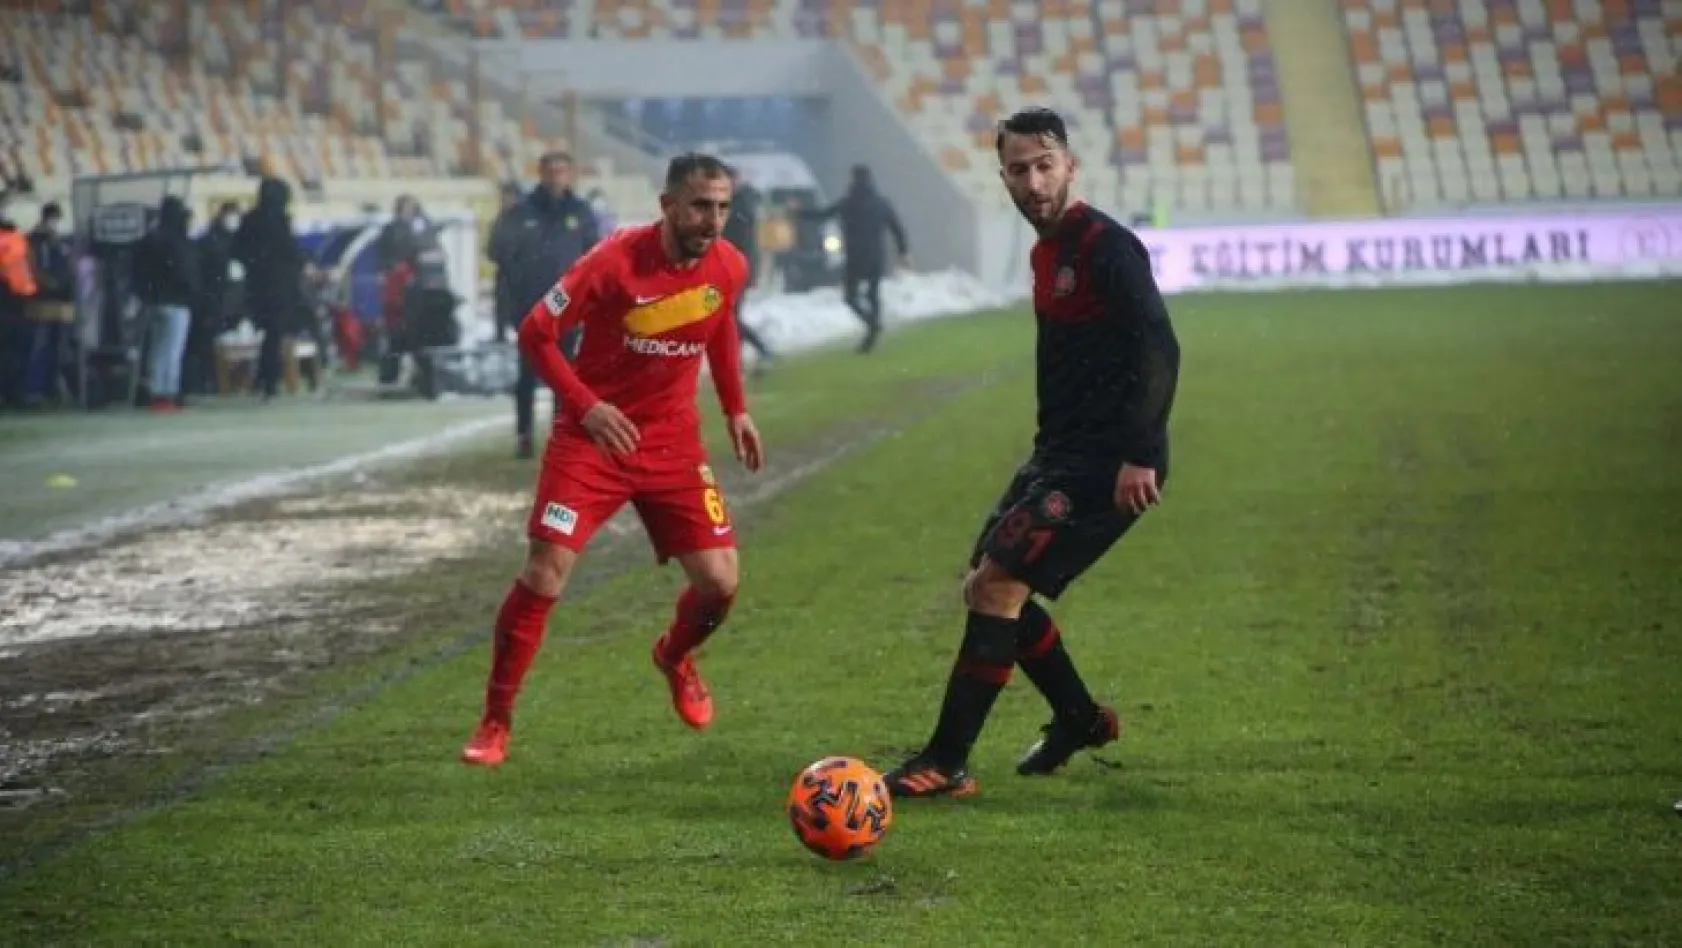 Süper Lig: Yeni Malatyaspor: 0 - Fatih Karagümrük: 0 (Maç sonucu)